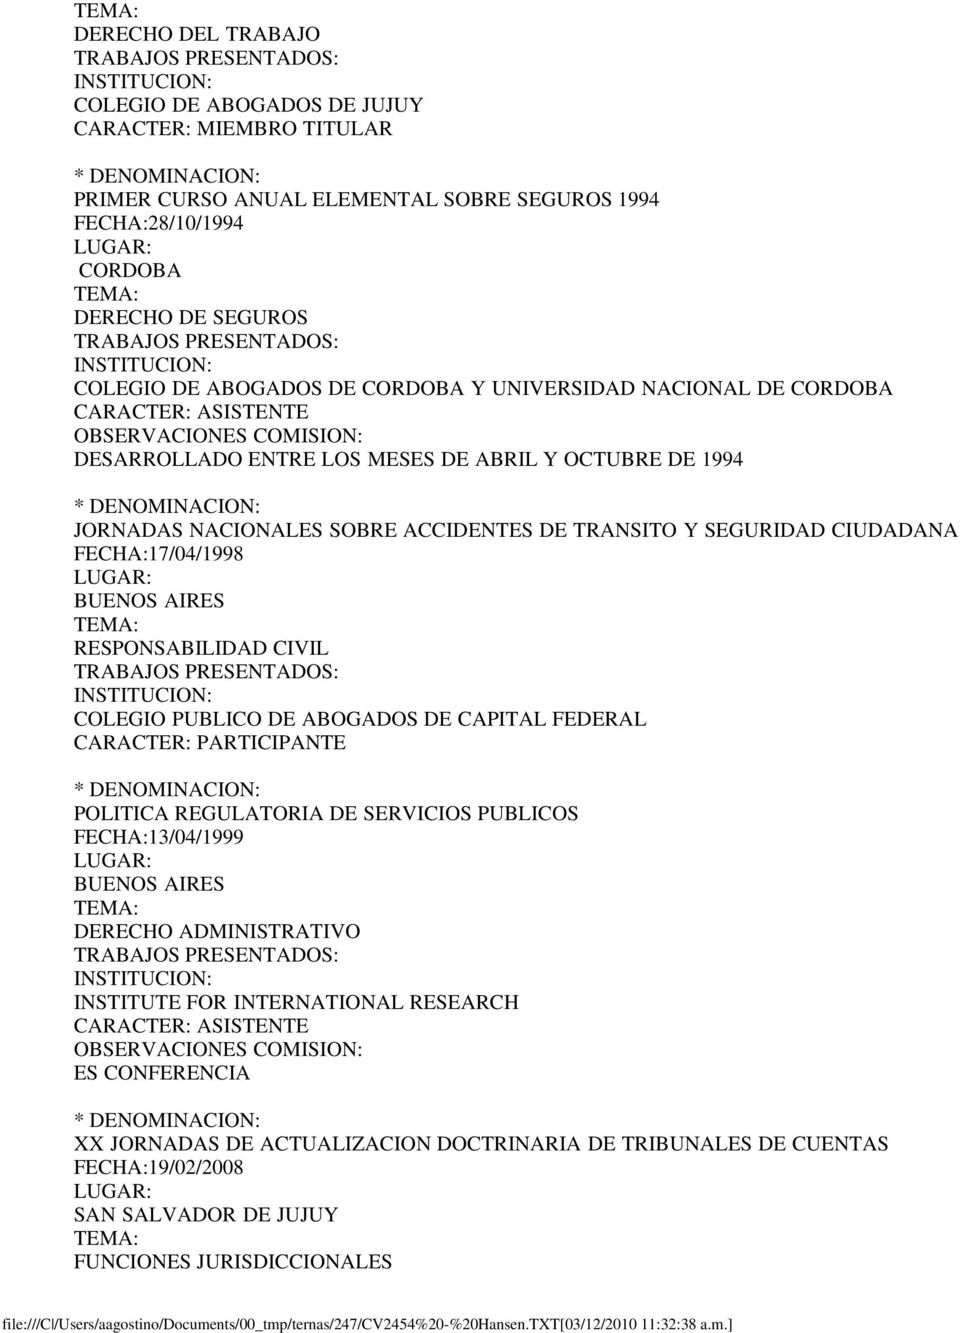 BUENOS AIRES RESPONSABILIDAD CIVIL COLEGIO PUBLICO DE ABOGADOS DE CAPITAL FEDERAL CARACTER: PARTICIPANTE POLITICA REGULATORIA DE SERVICIOS PUBLICOS FECHA:13/04/1999 BUENOS AIRES DERECHO